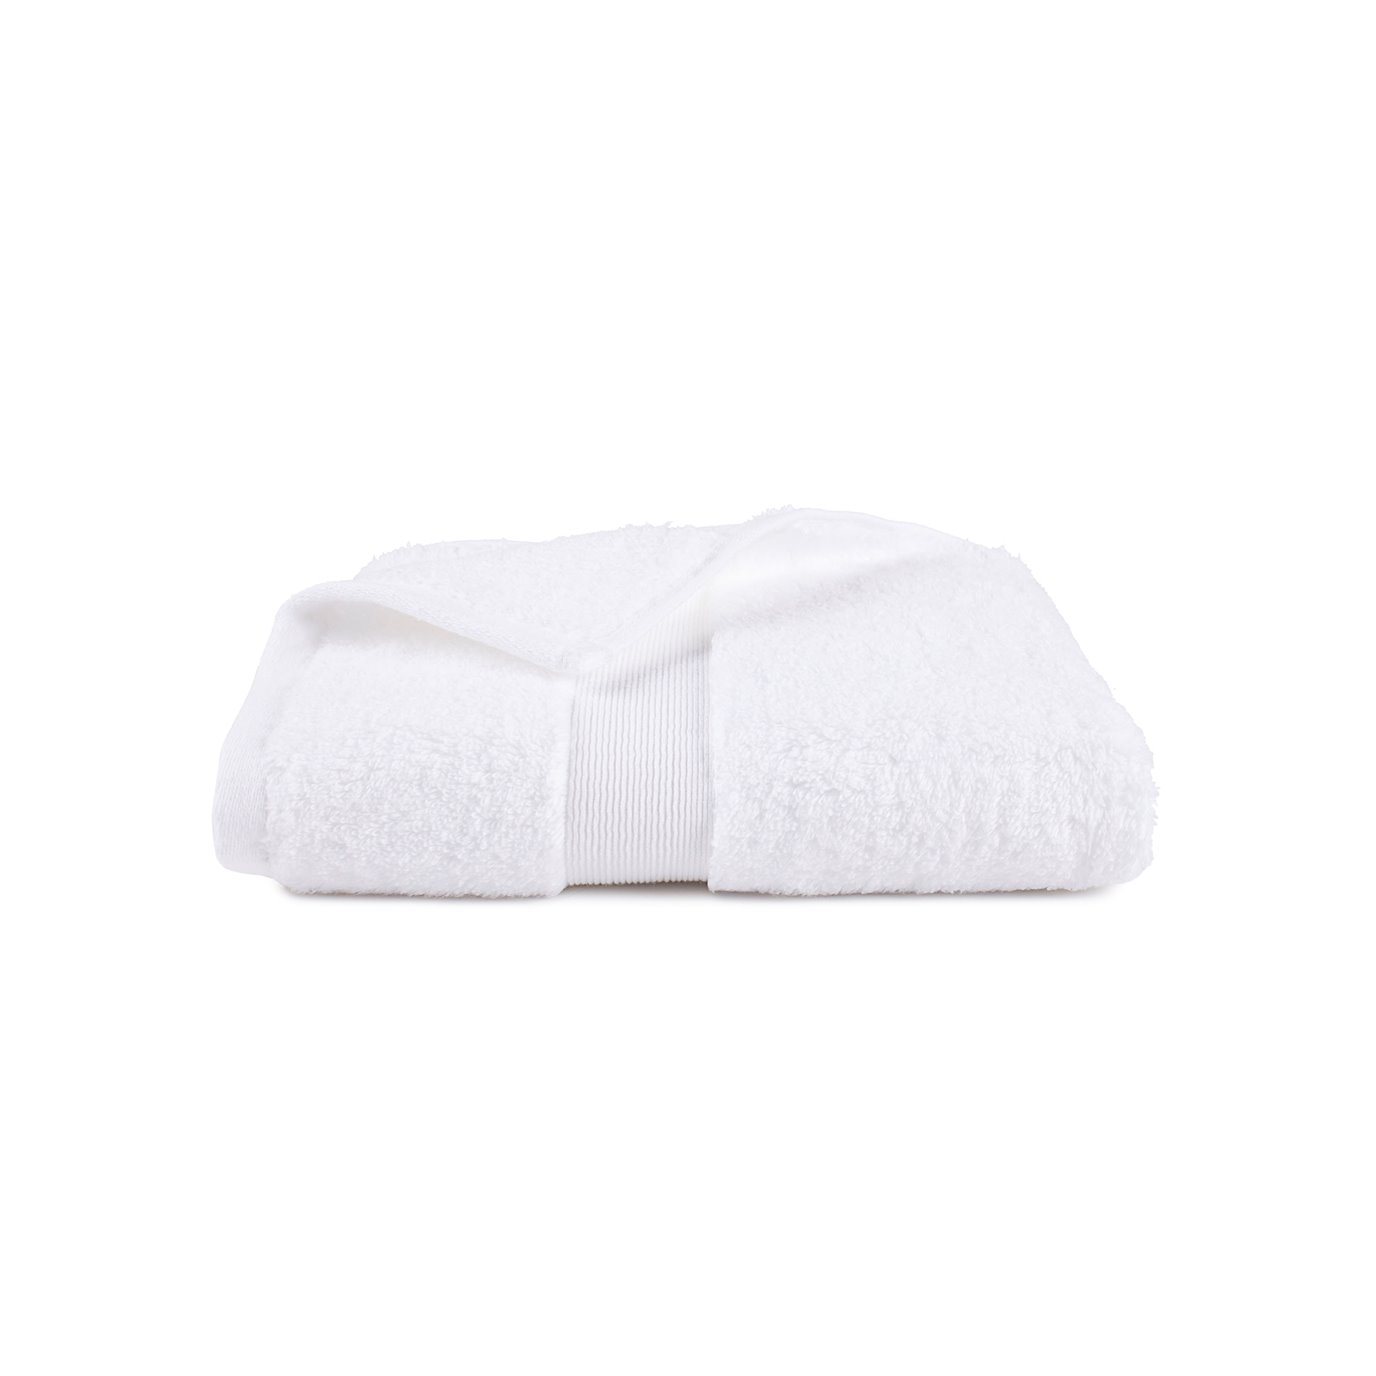 Martex Six  Piece Bath Towel Sets Color White 